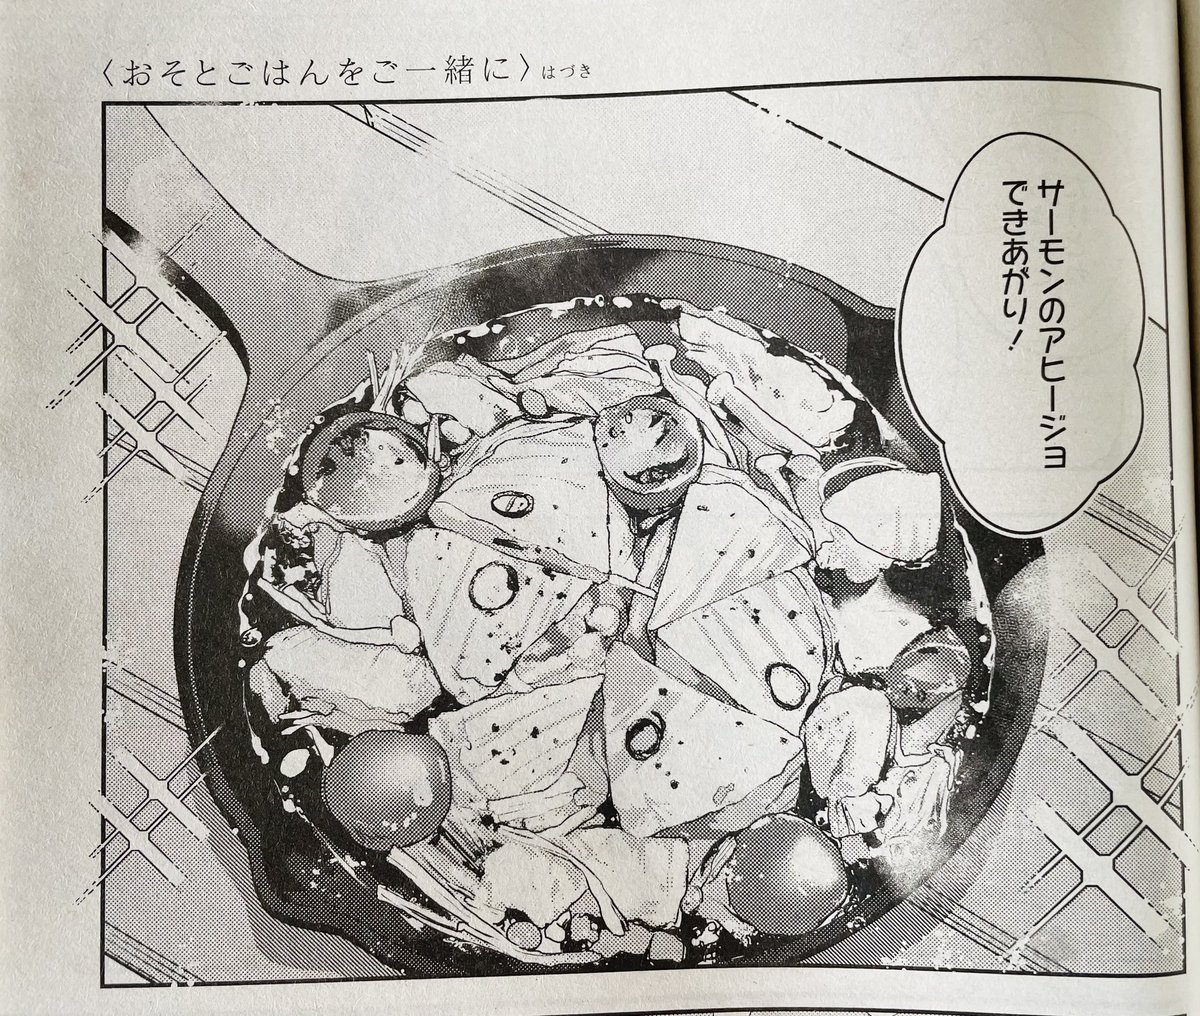 【お知らせ】
本日発売のコミック百合姫10月号に『おそとごはんをご一緒に』7食目が掲載されております!

今回はお魚を使ったおそとごはんです🐟
アヒージョ作りに挑戦…!
#おそとごはんをご一緒に 